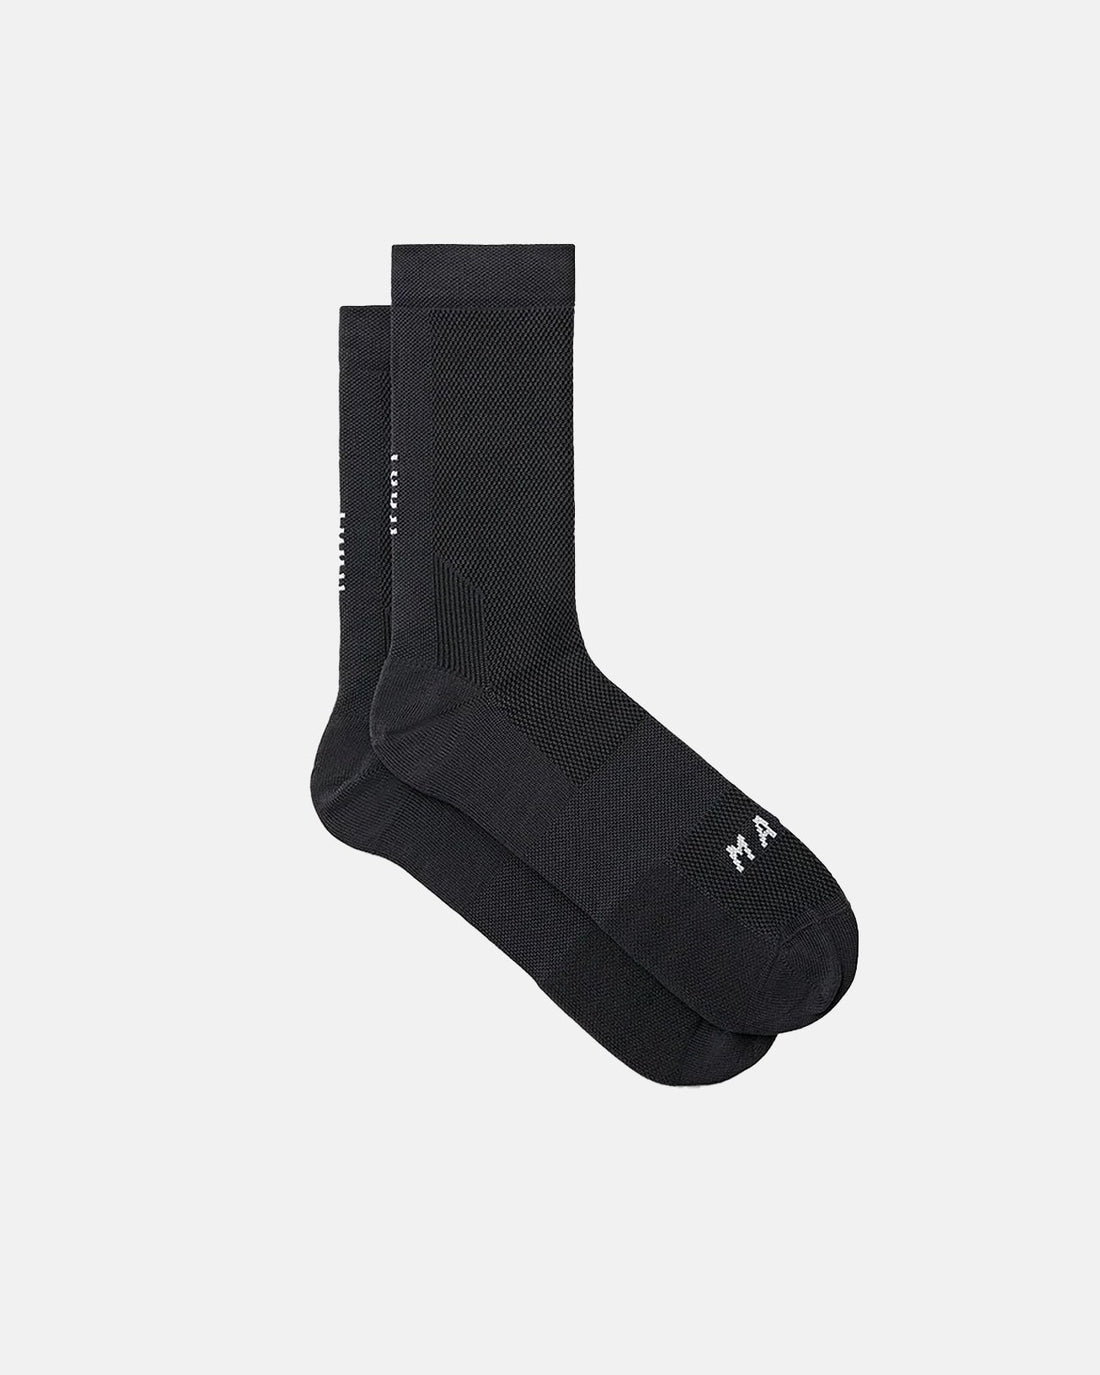 Division Sock - Black/Black - MAAP